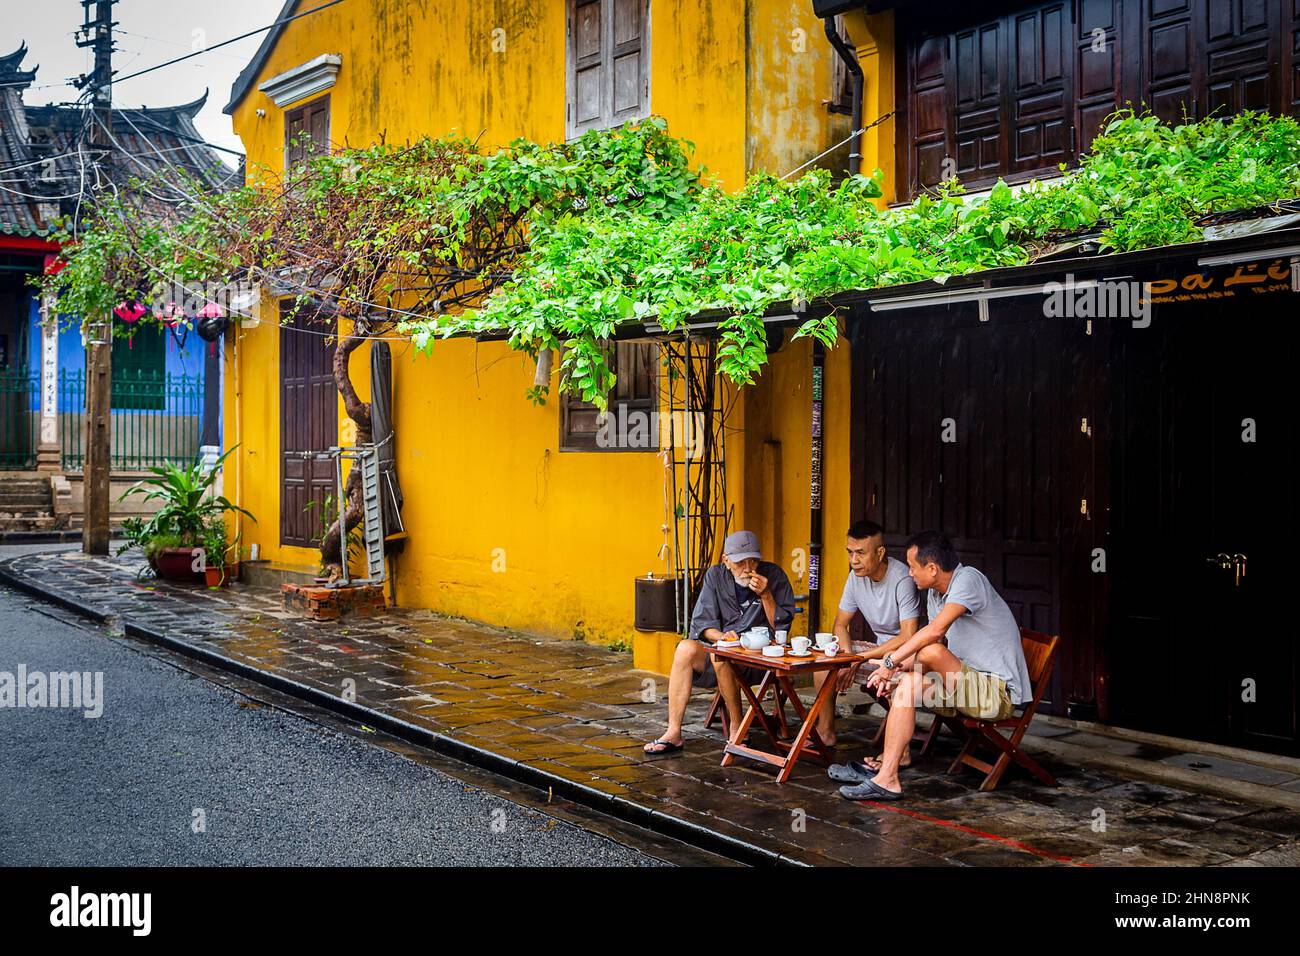 Trois hommes s'assoient sous un surplomb avec des plantes vertes pendant qu'ils pleuvent dans la vieille ville. Banque D'Images